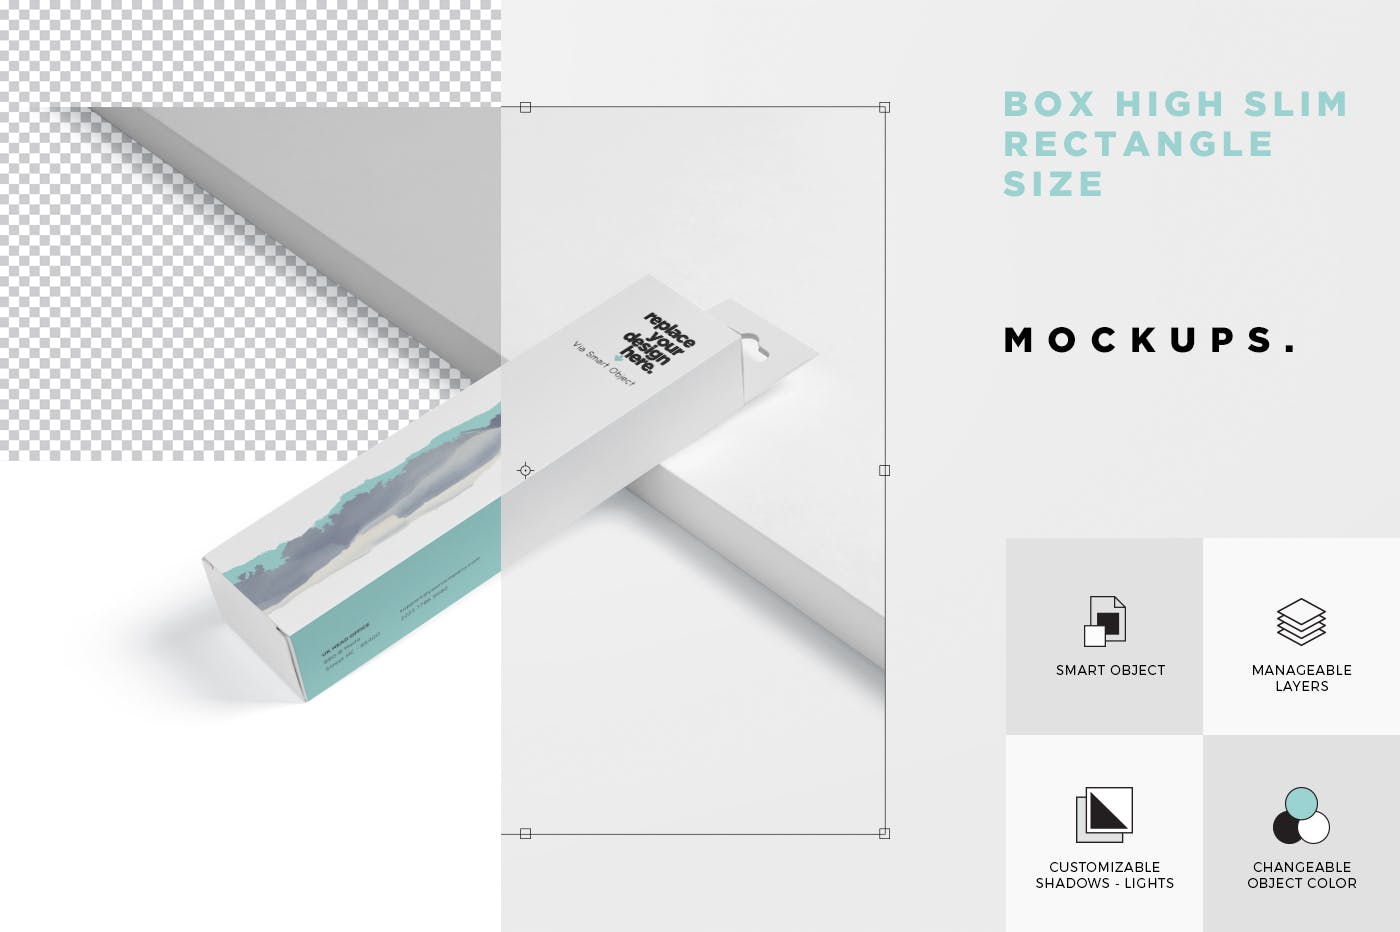 超薄矩形长条包装盒外观设计效果图素材中国精选 Box Mockup PSDs – High Slim Rectangle Size Hanger插图(6)